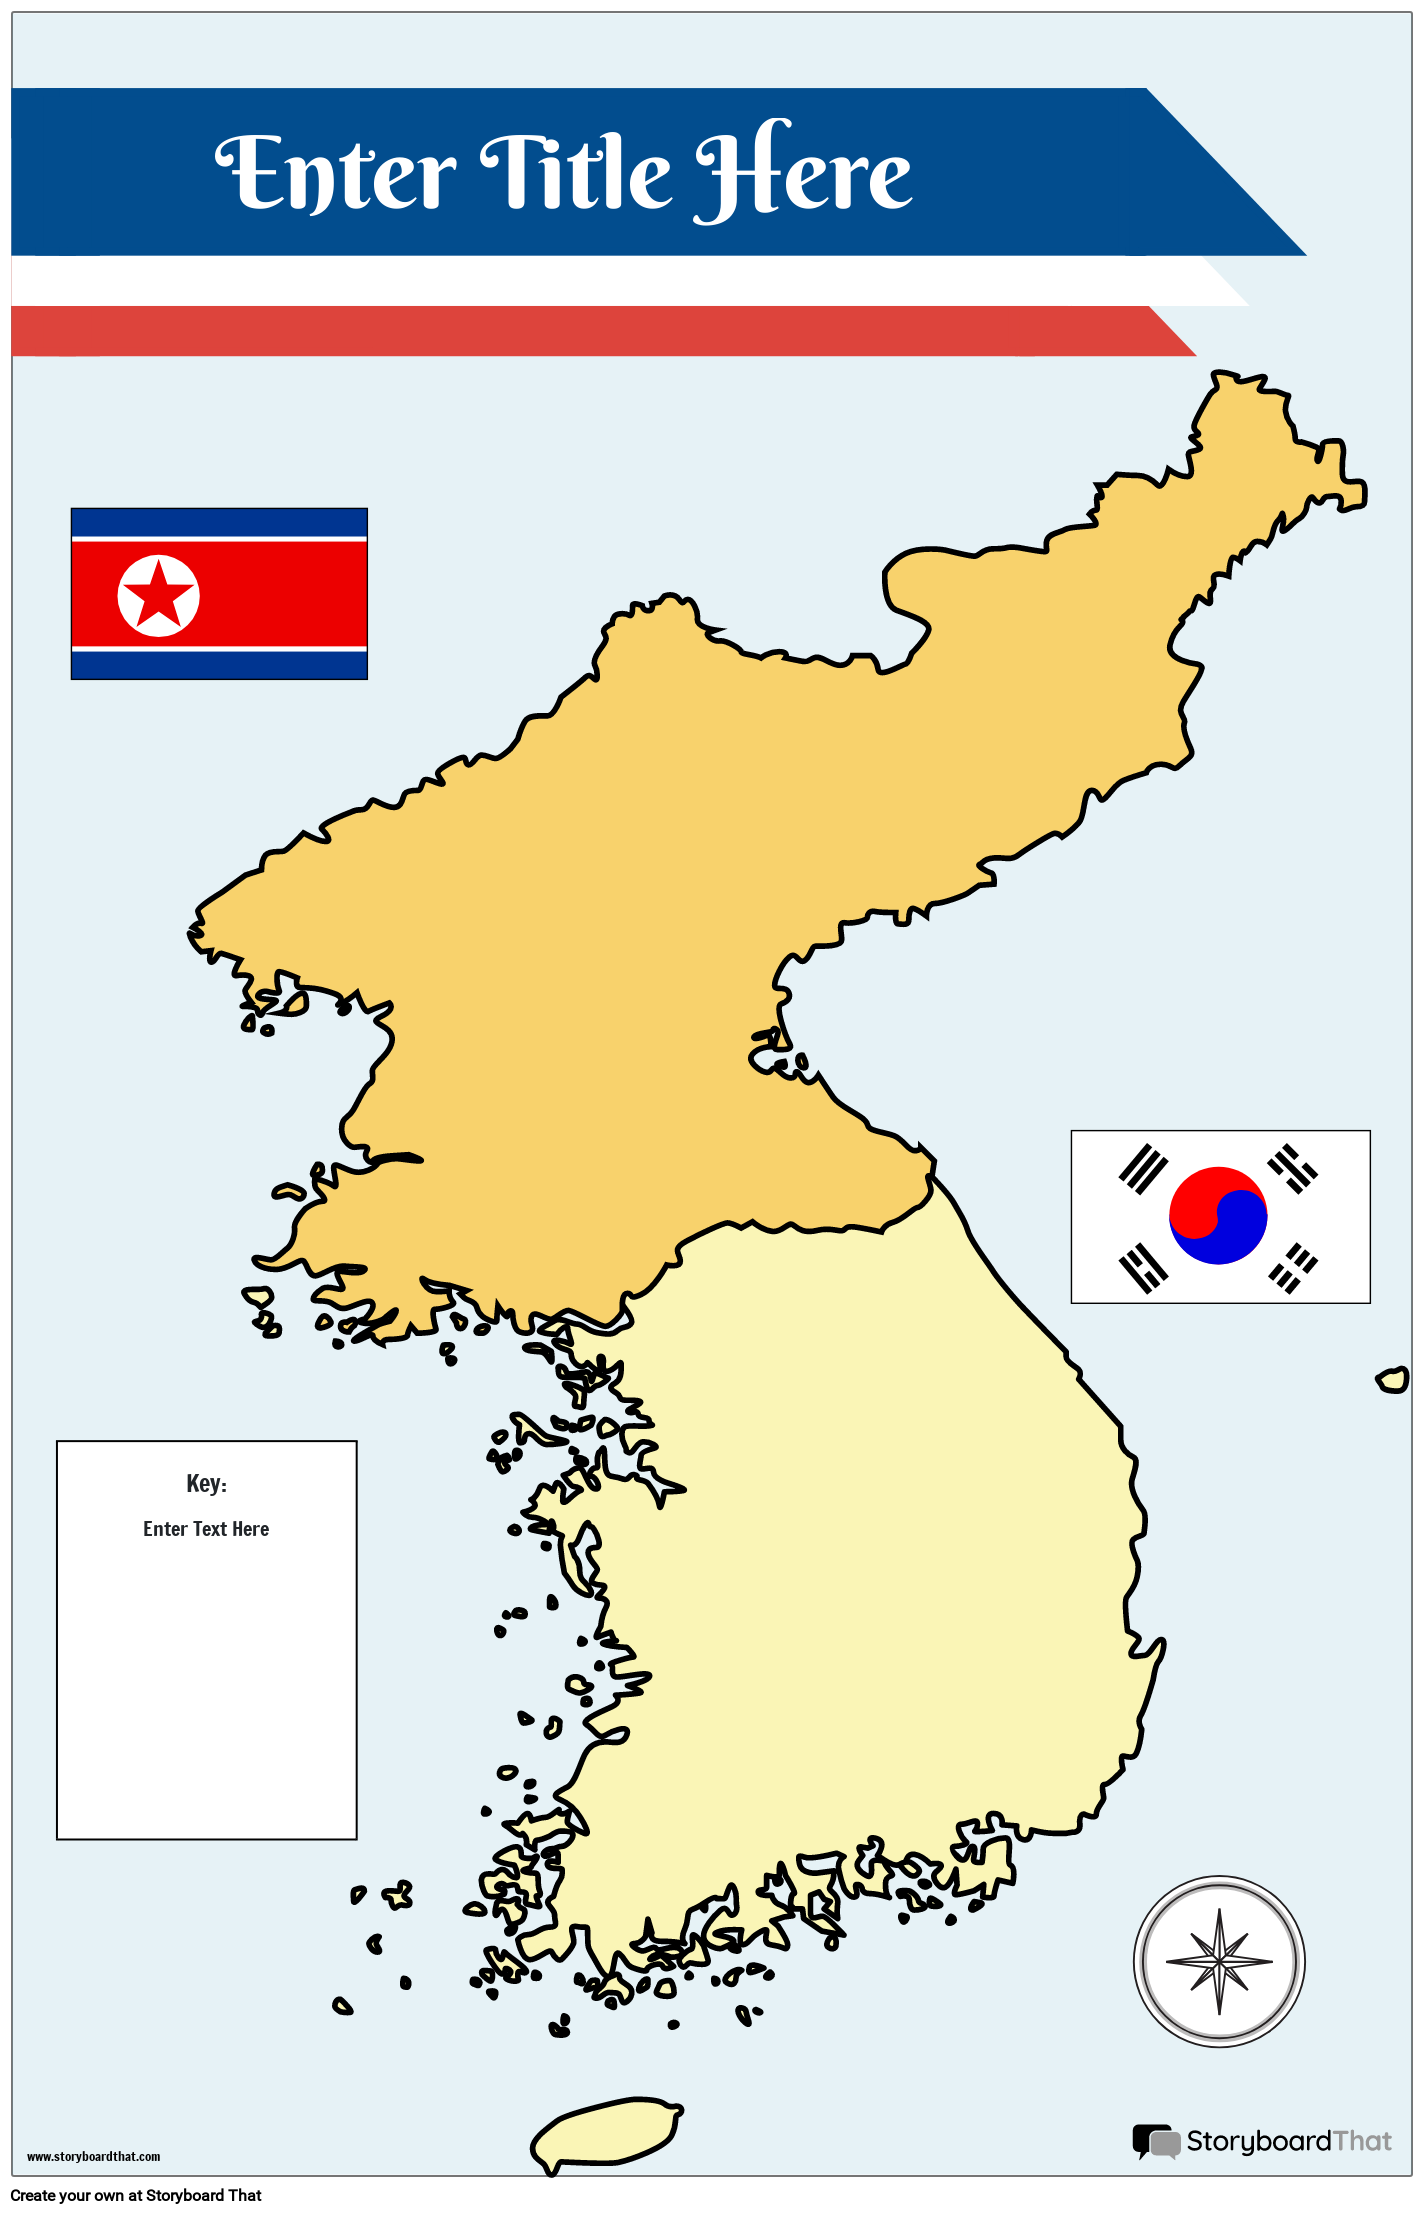 नक्शा पोस्टर 31 रंग पोर्ट्रेट उत्तर और दक्षिण कोरिया